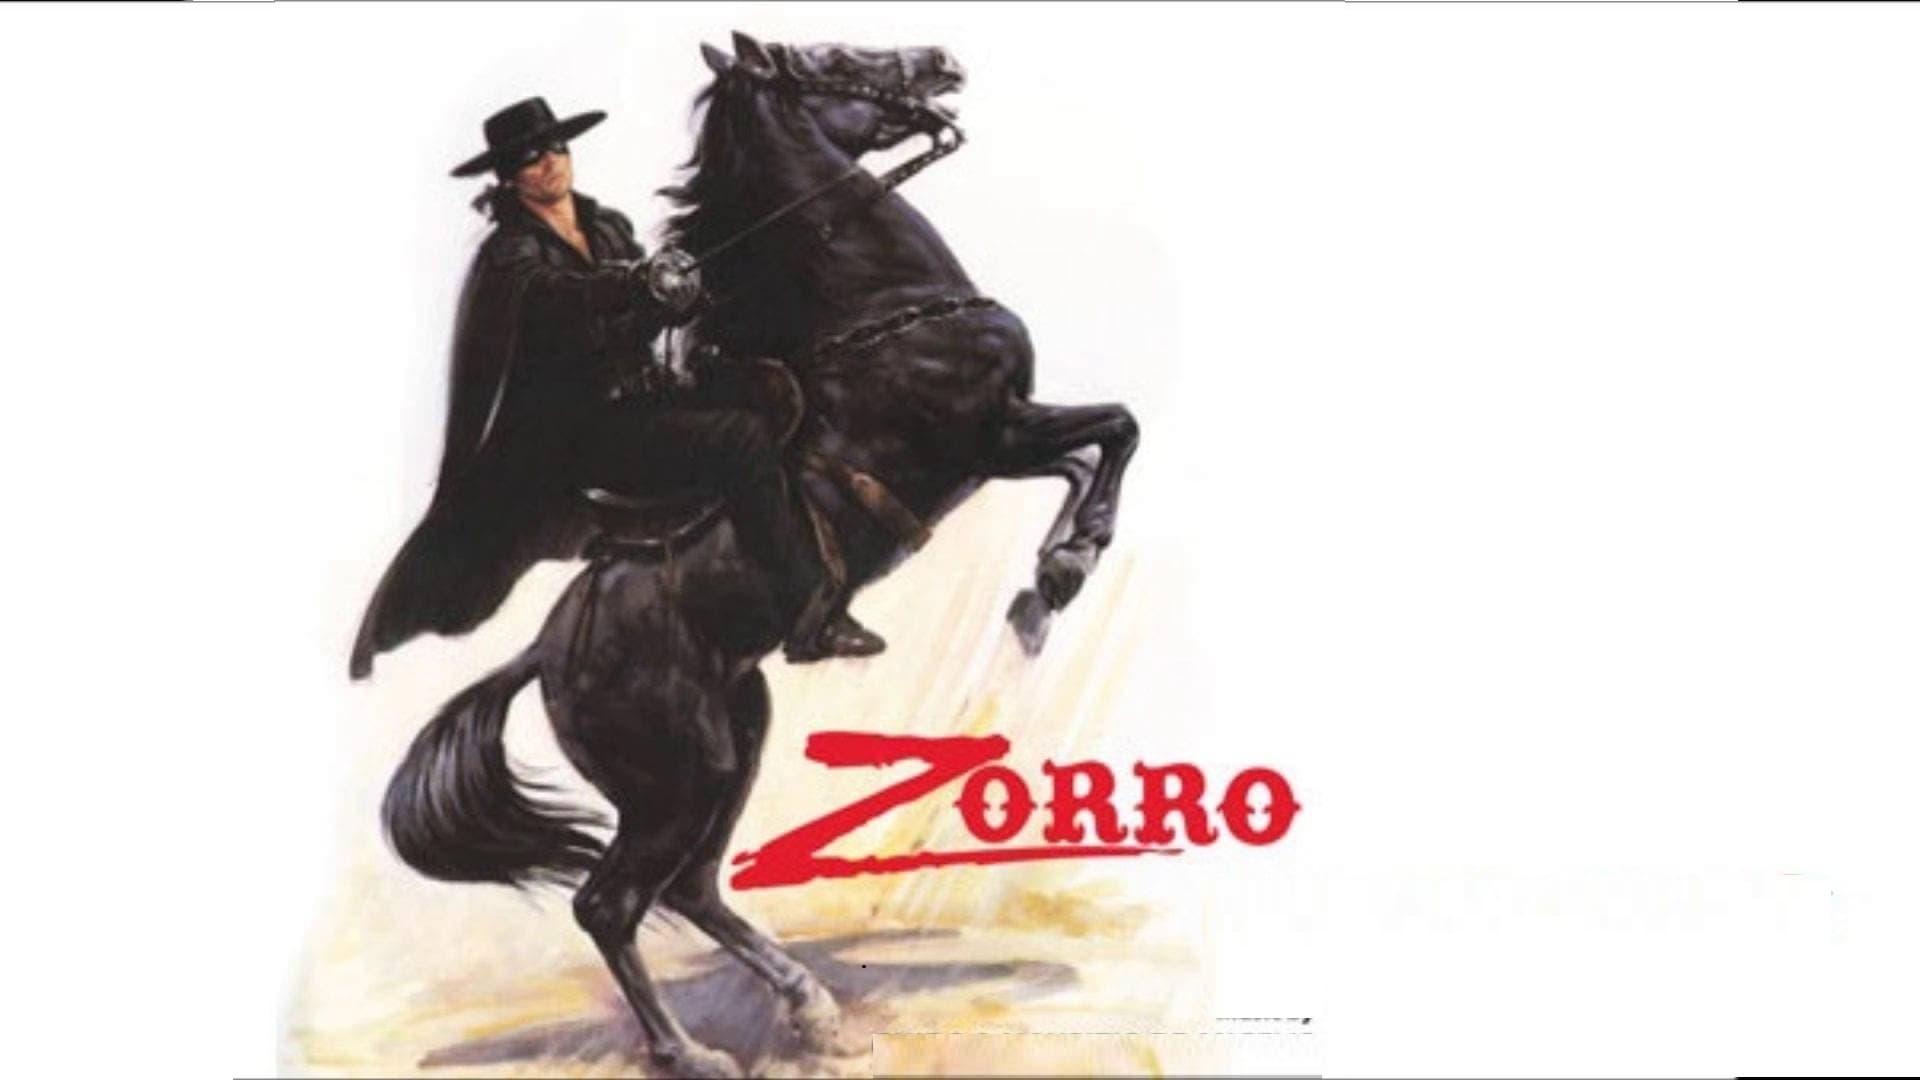 The Mark of Zorro backdrop